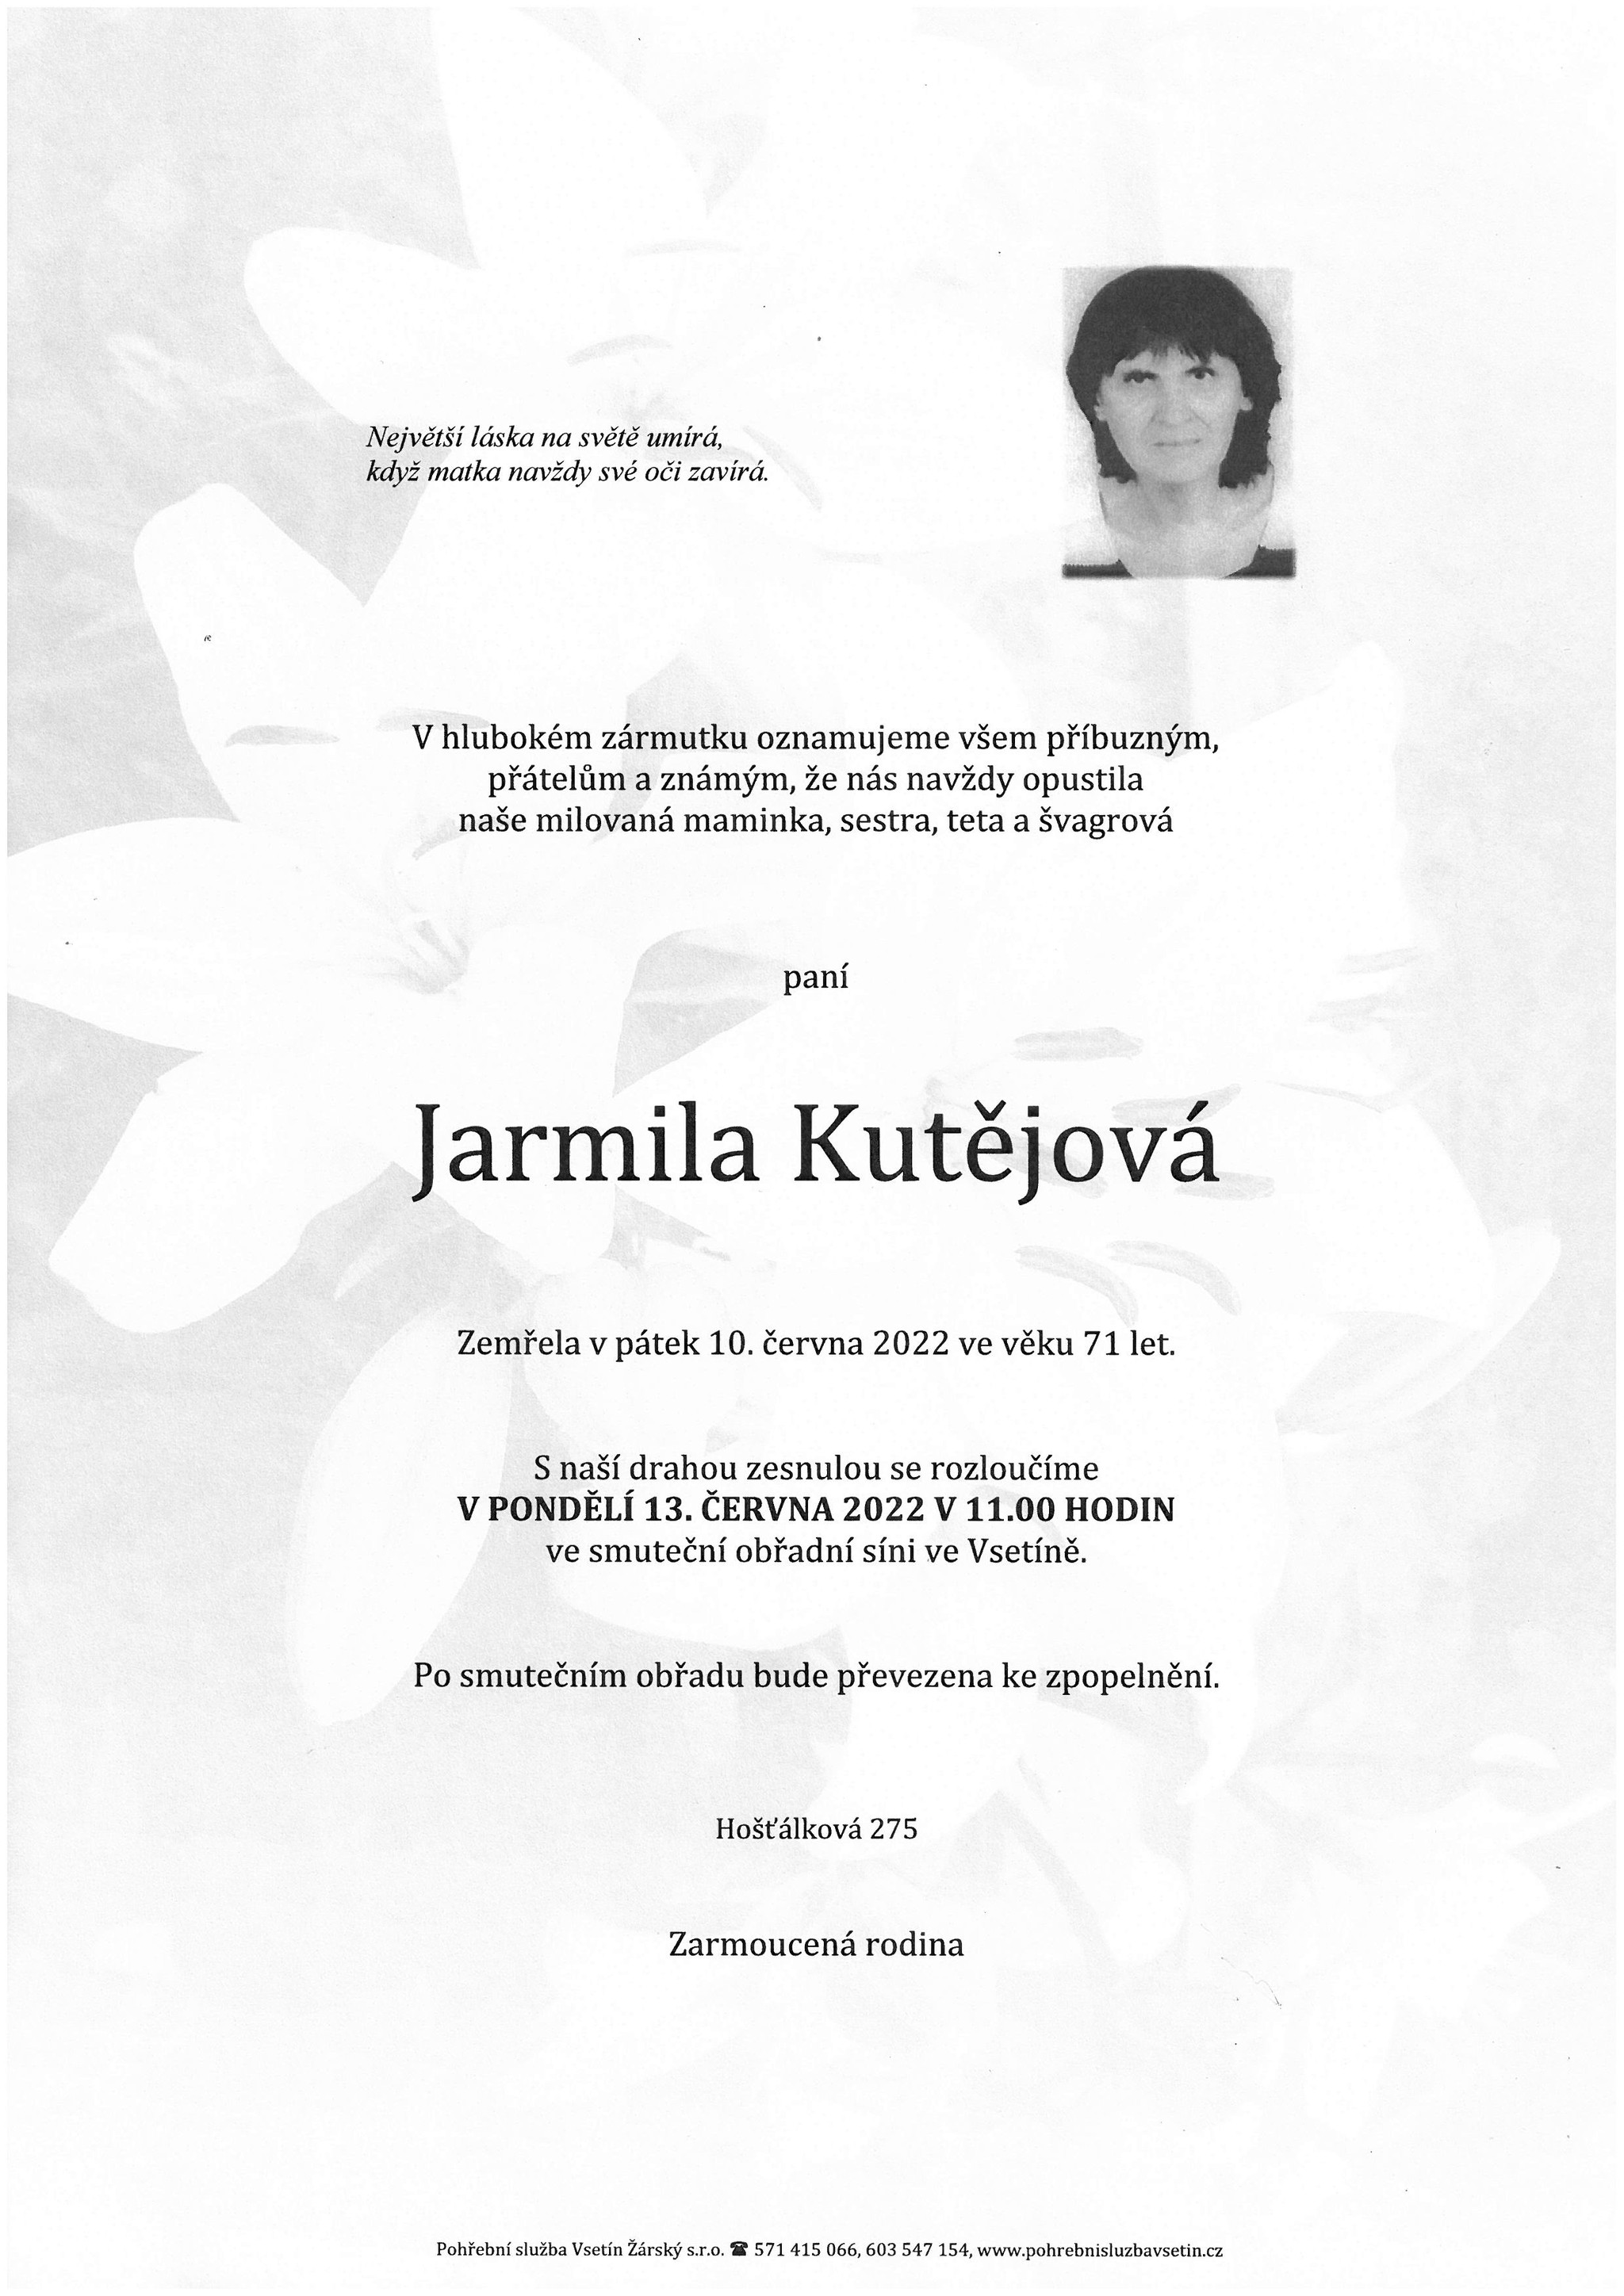 Jarmila Kutějová